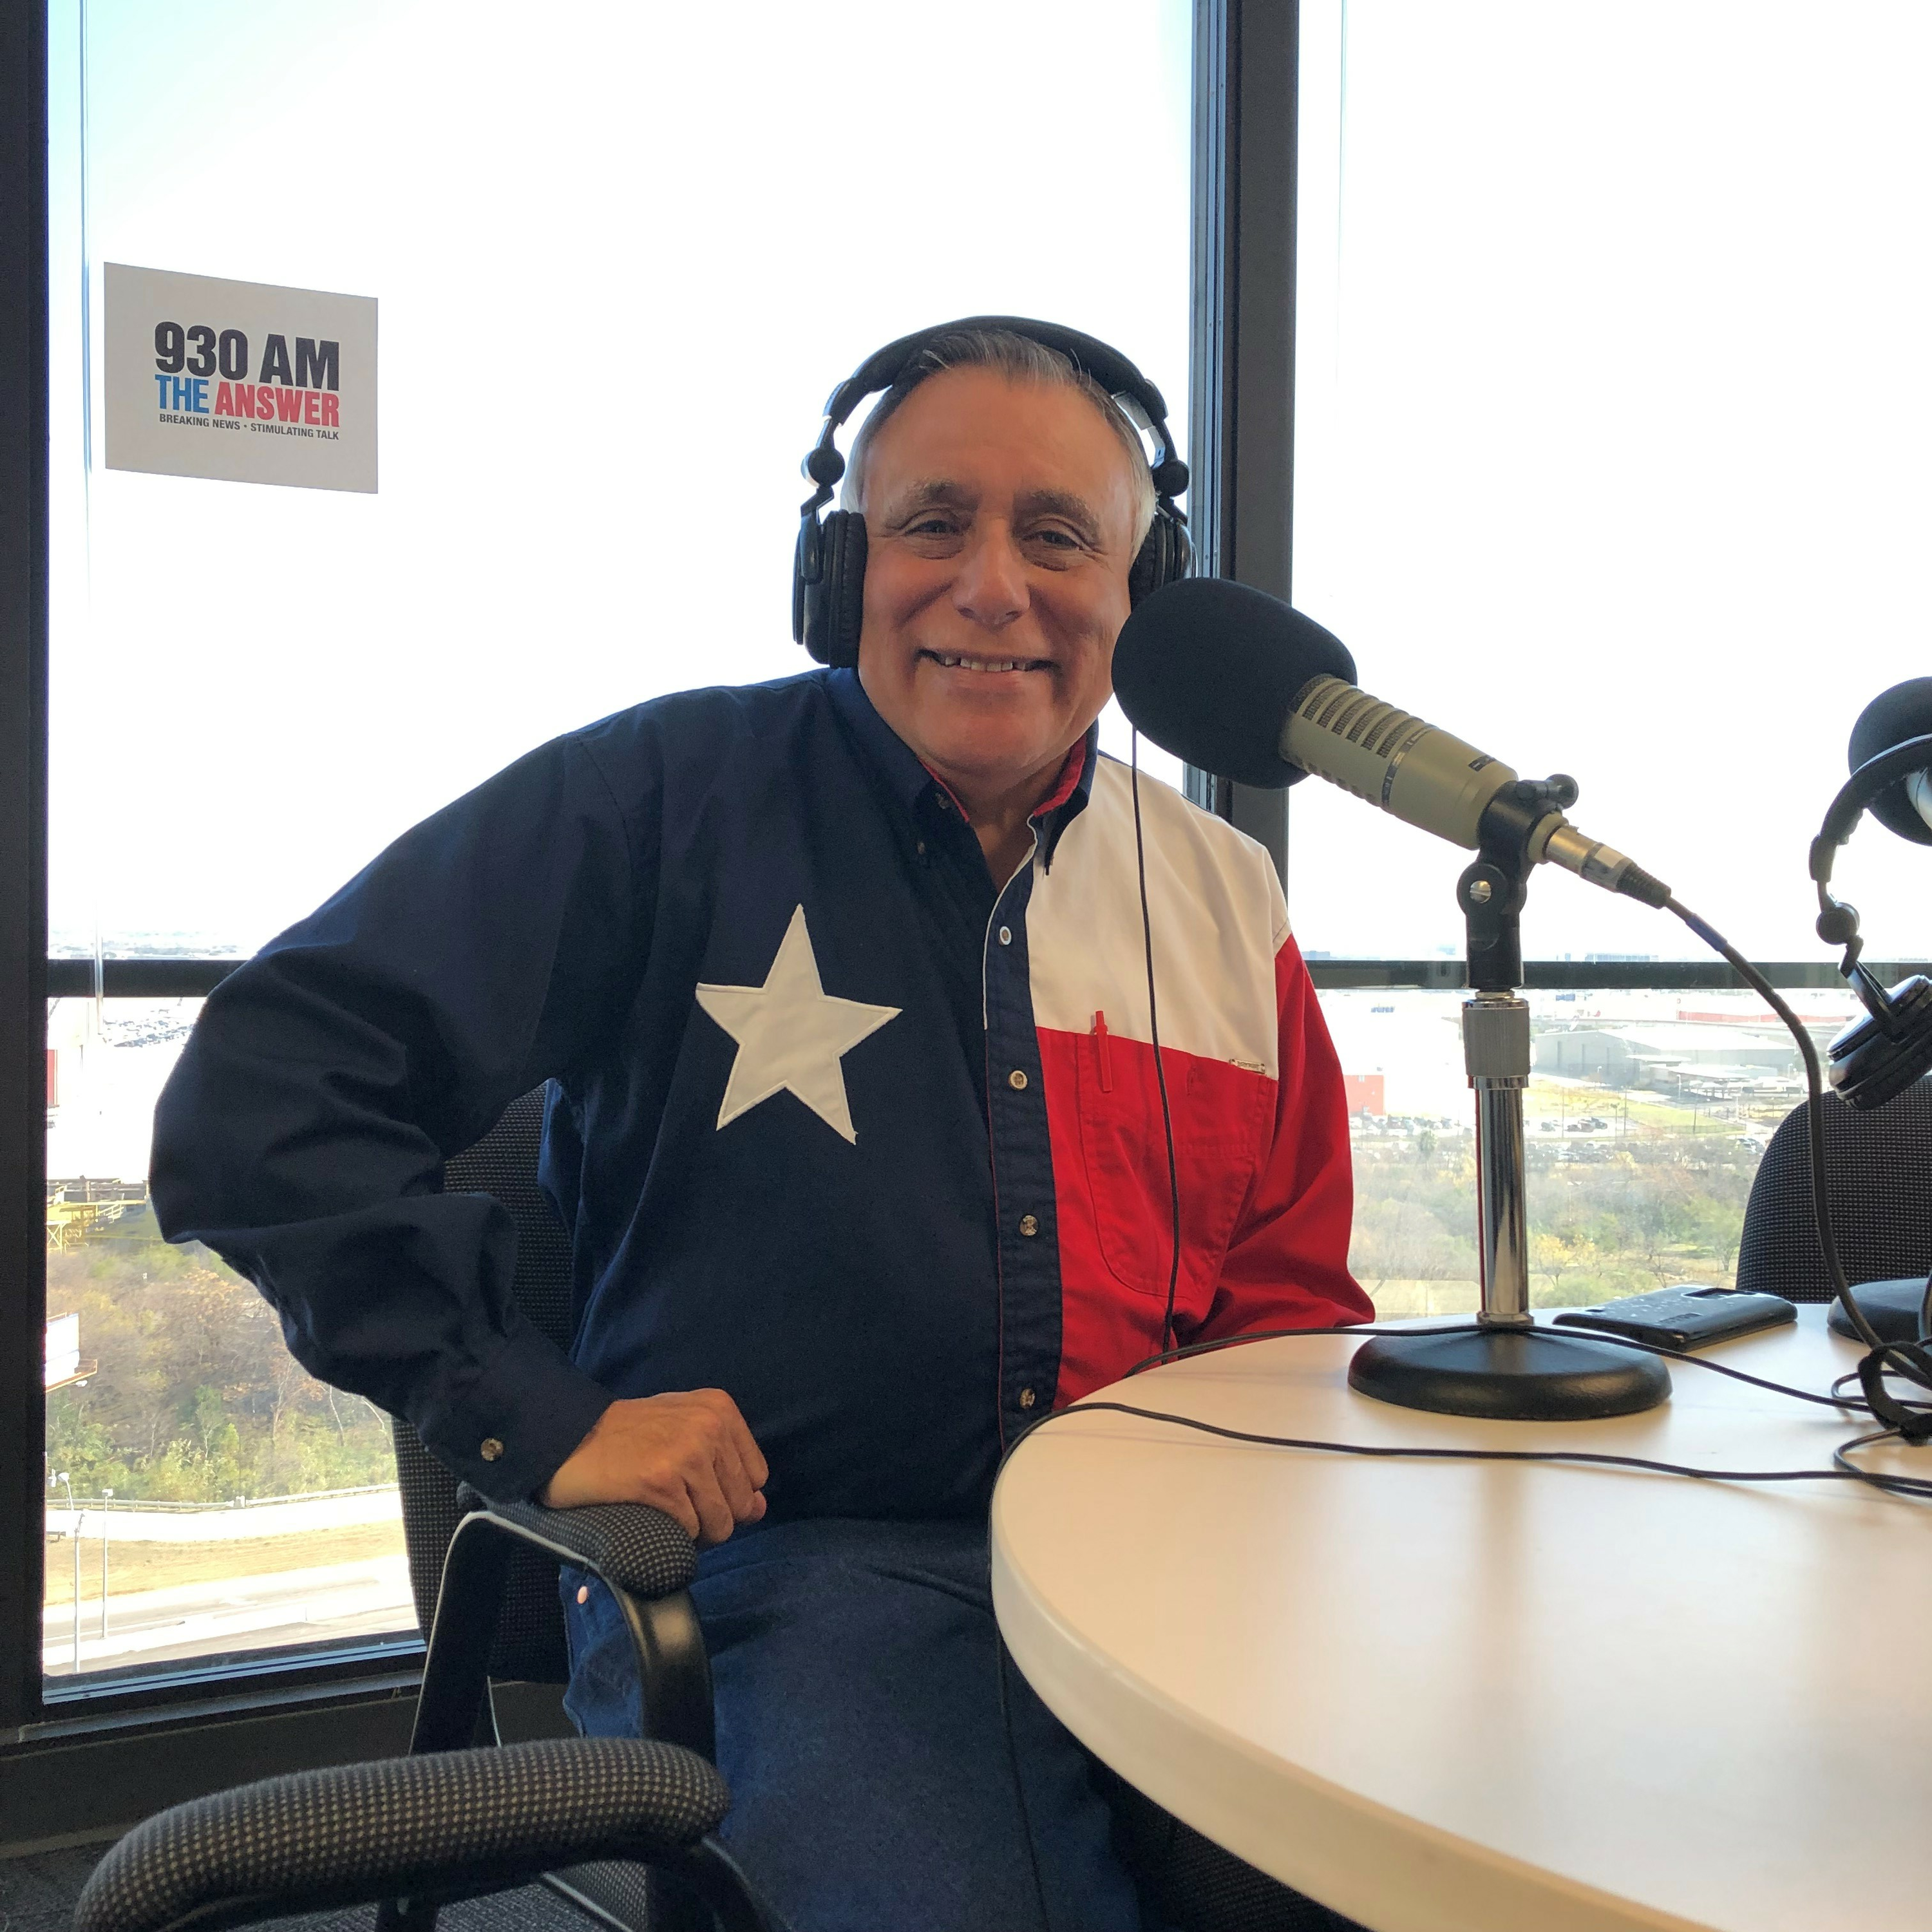 11-25-3 The El Conservador Radio with George Rodriguez